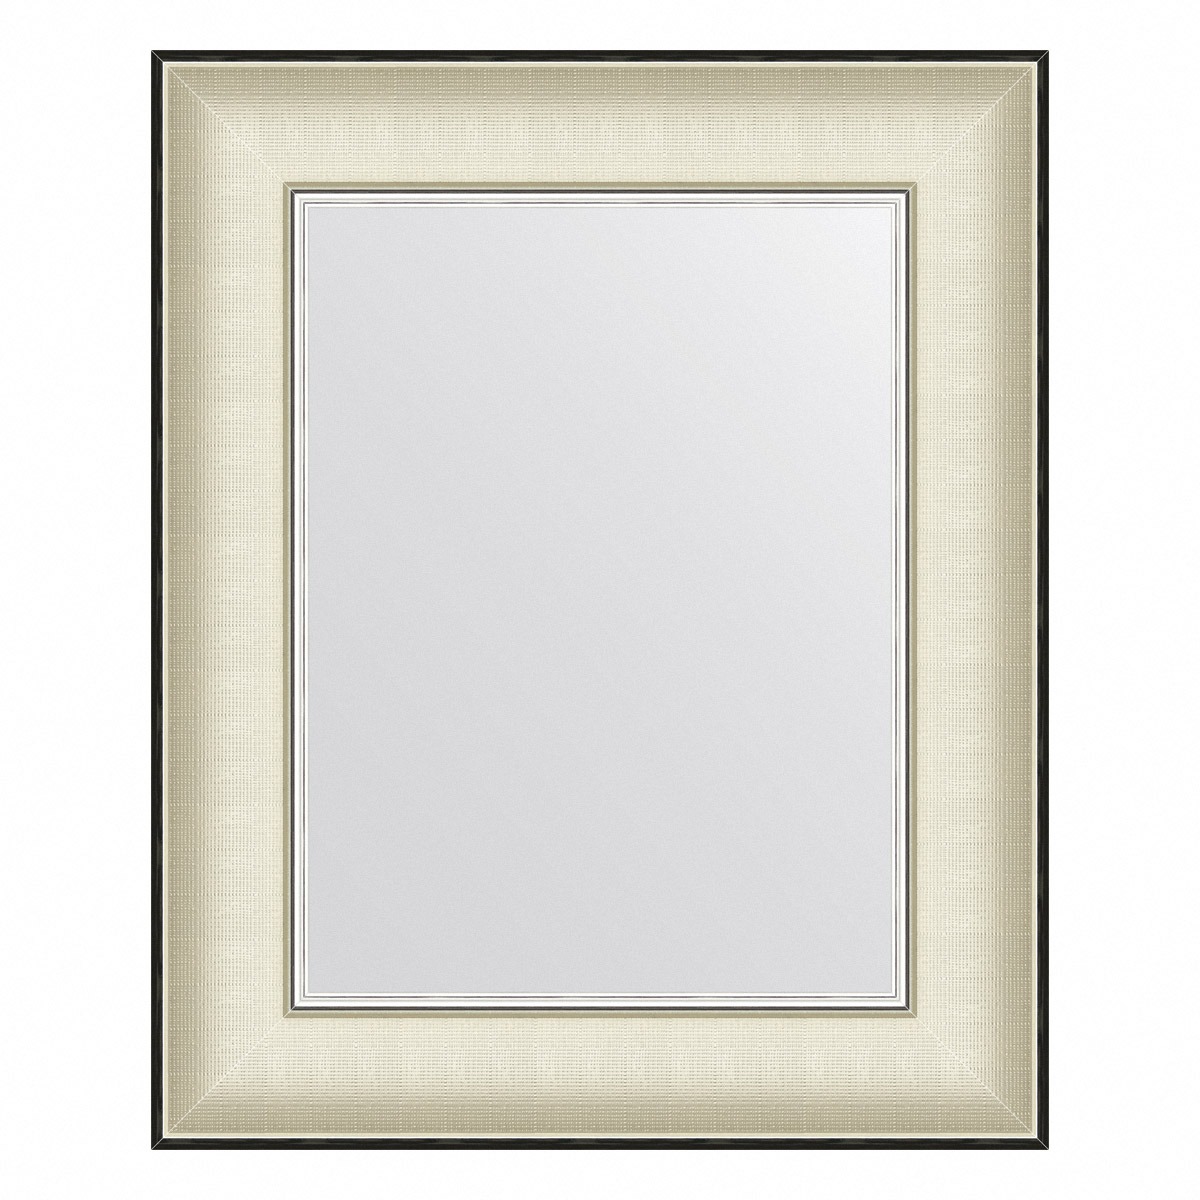 Зеркало в багетной раме Evoform белая кожа с хромом 78 мм 44х54 см зеркало в багетной раме evoform definite белое с хромом 44х54 см bx 7636